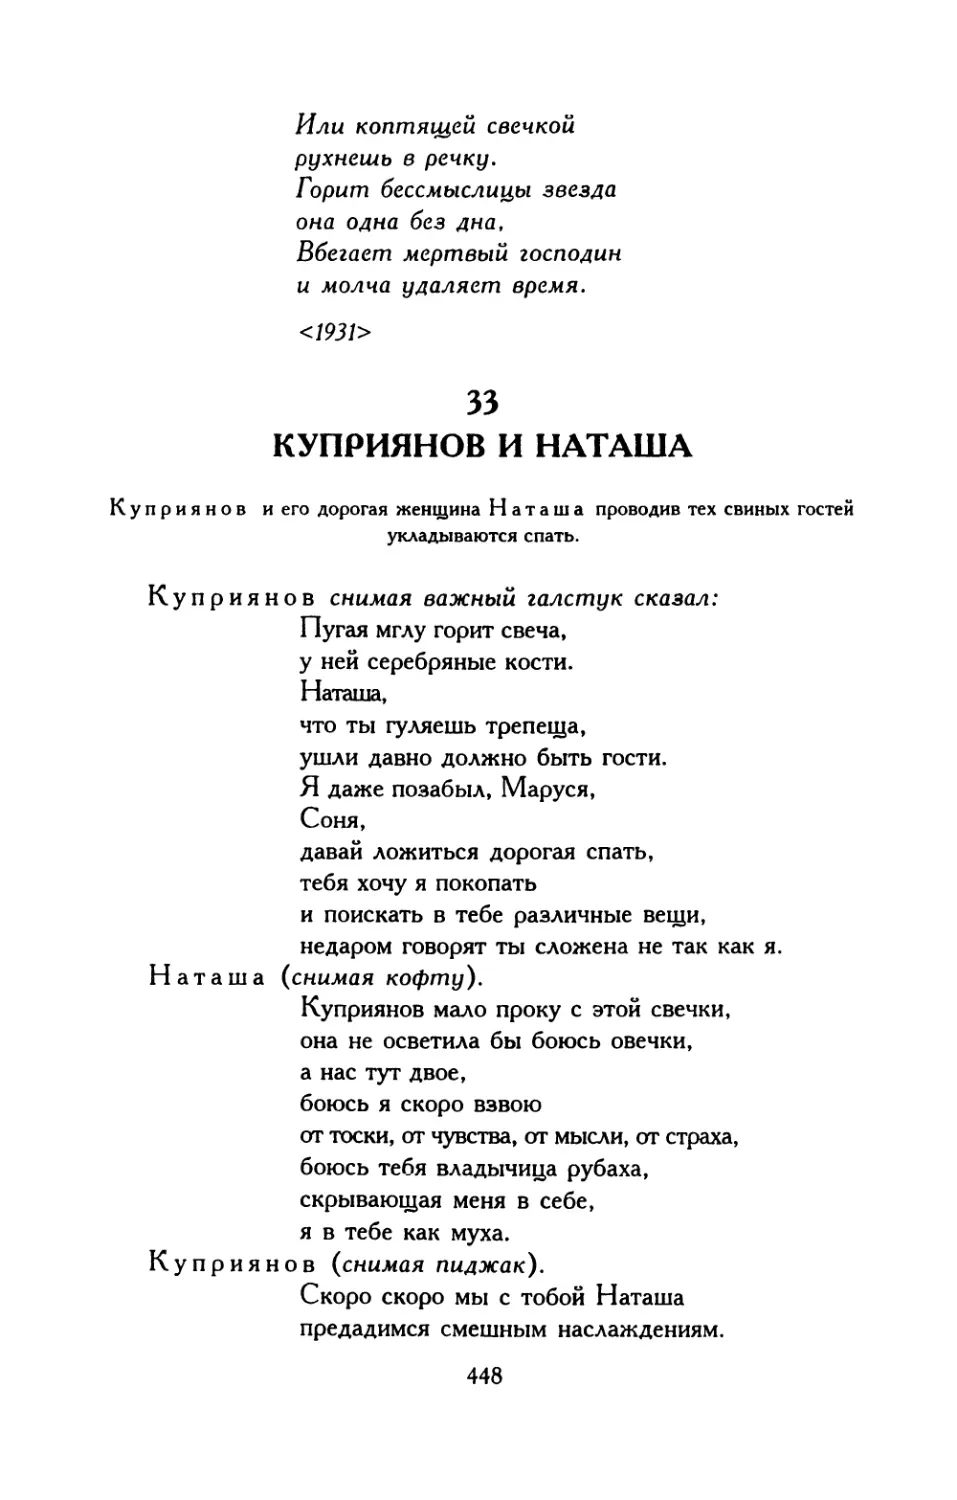 33. Куприянов и Наташа